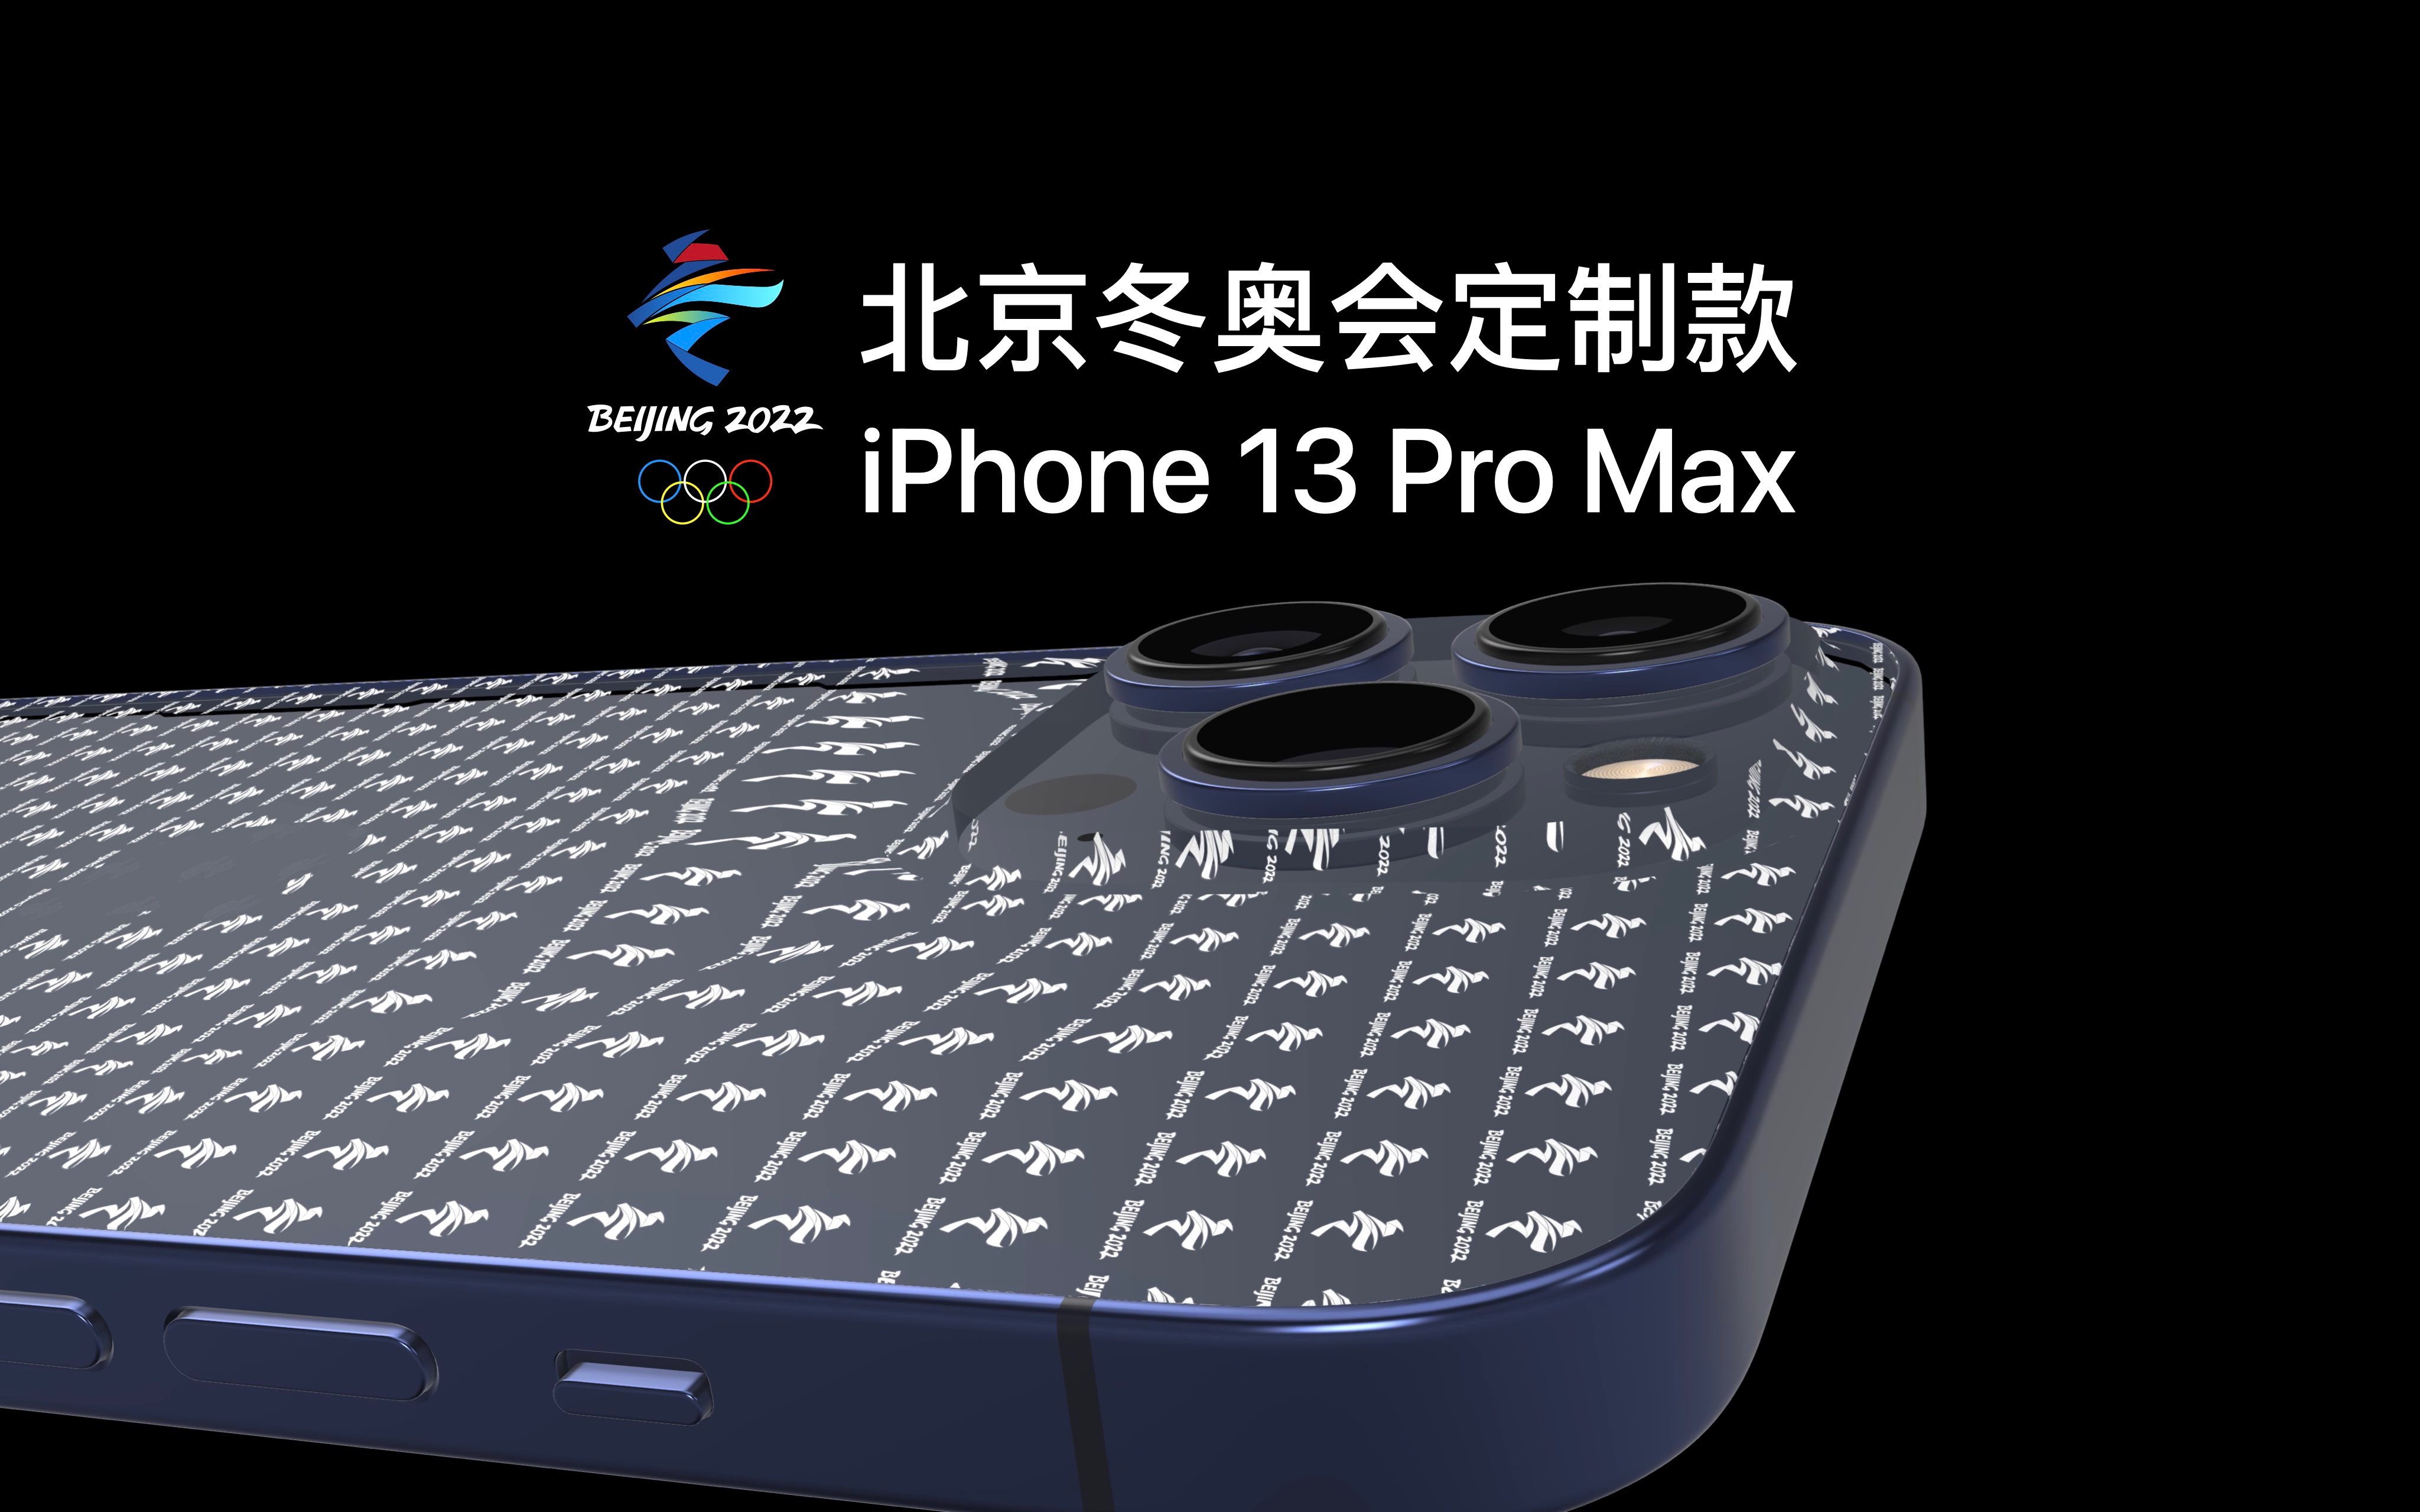 用 Apple 的方式展示北京冬奥会定制款 iPhone 13 Pro Max 概念机